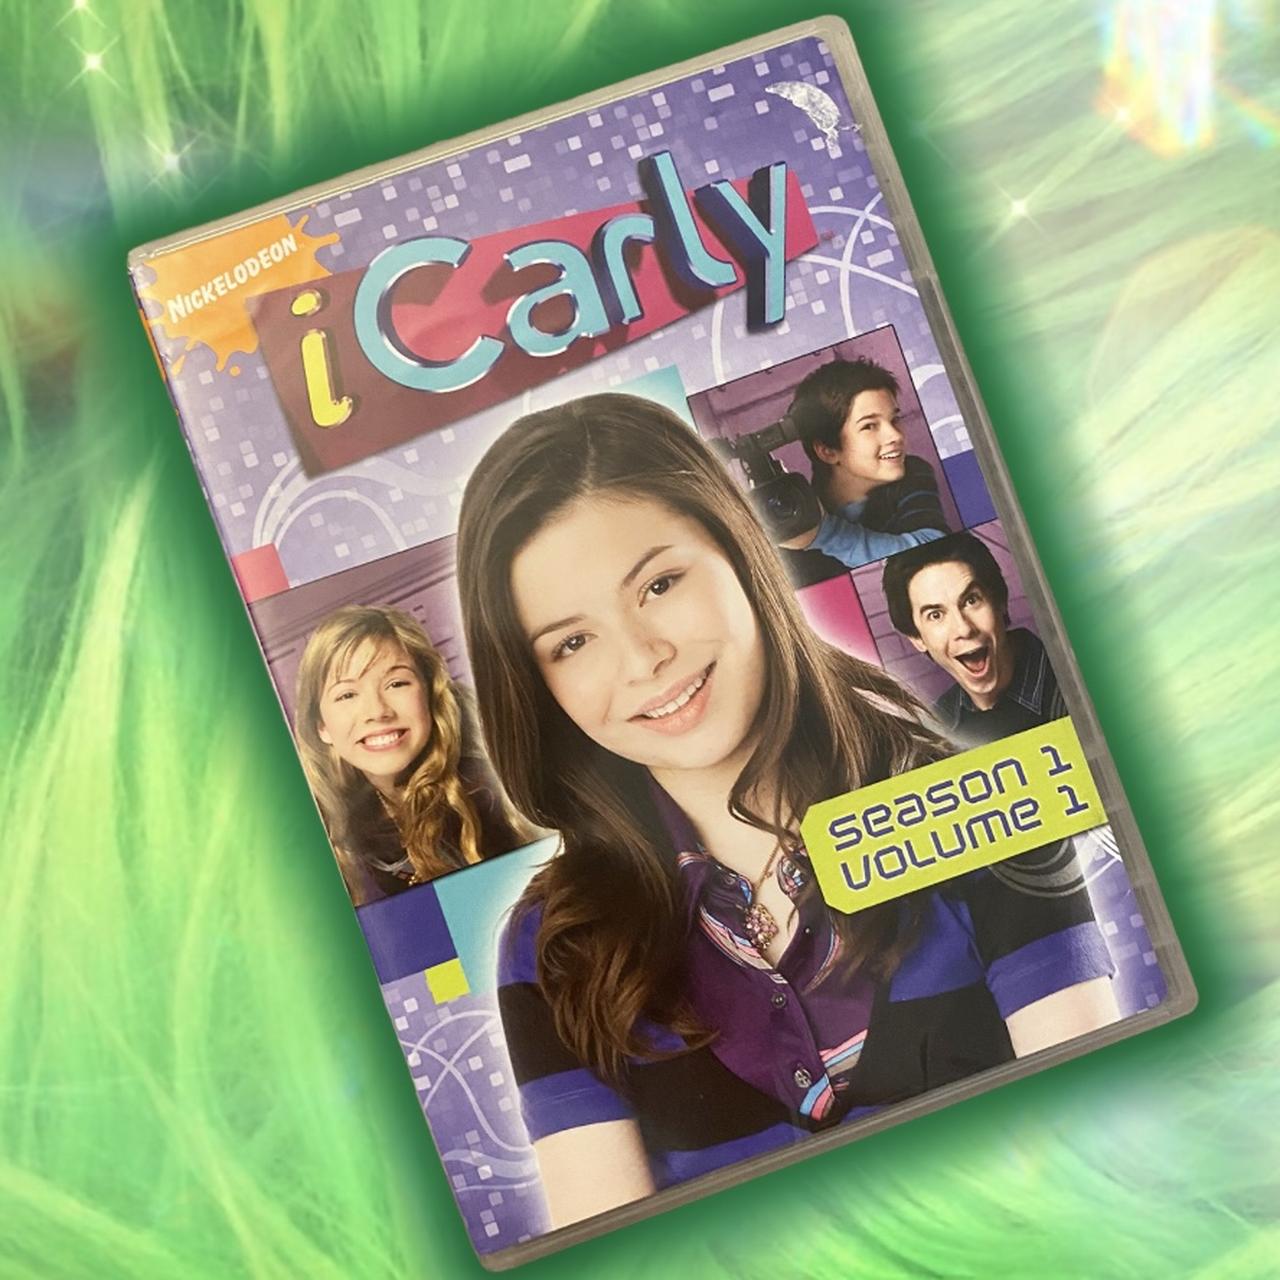 iCarly(アイ・カーリー) DVD シーズン1 VOL.1〈2枚組〉 - 外国映画